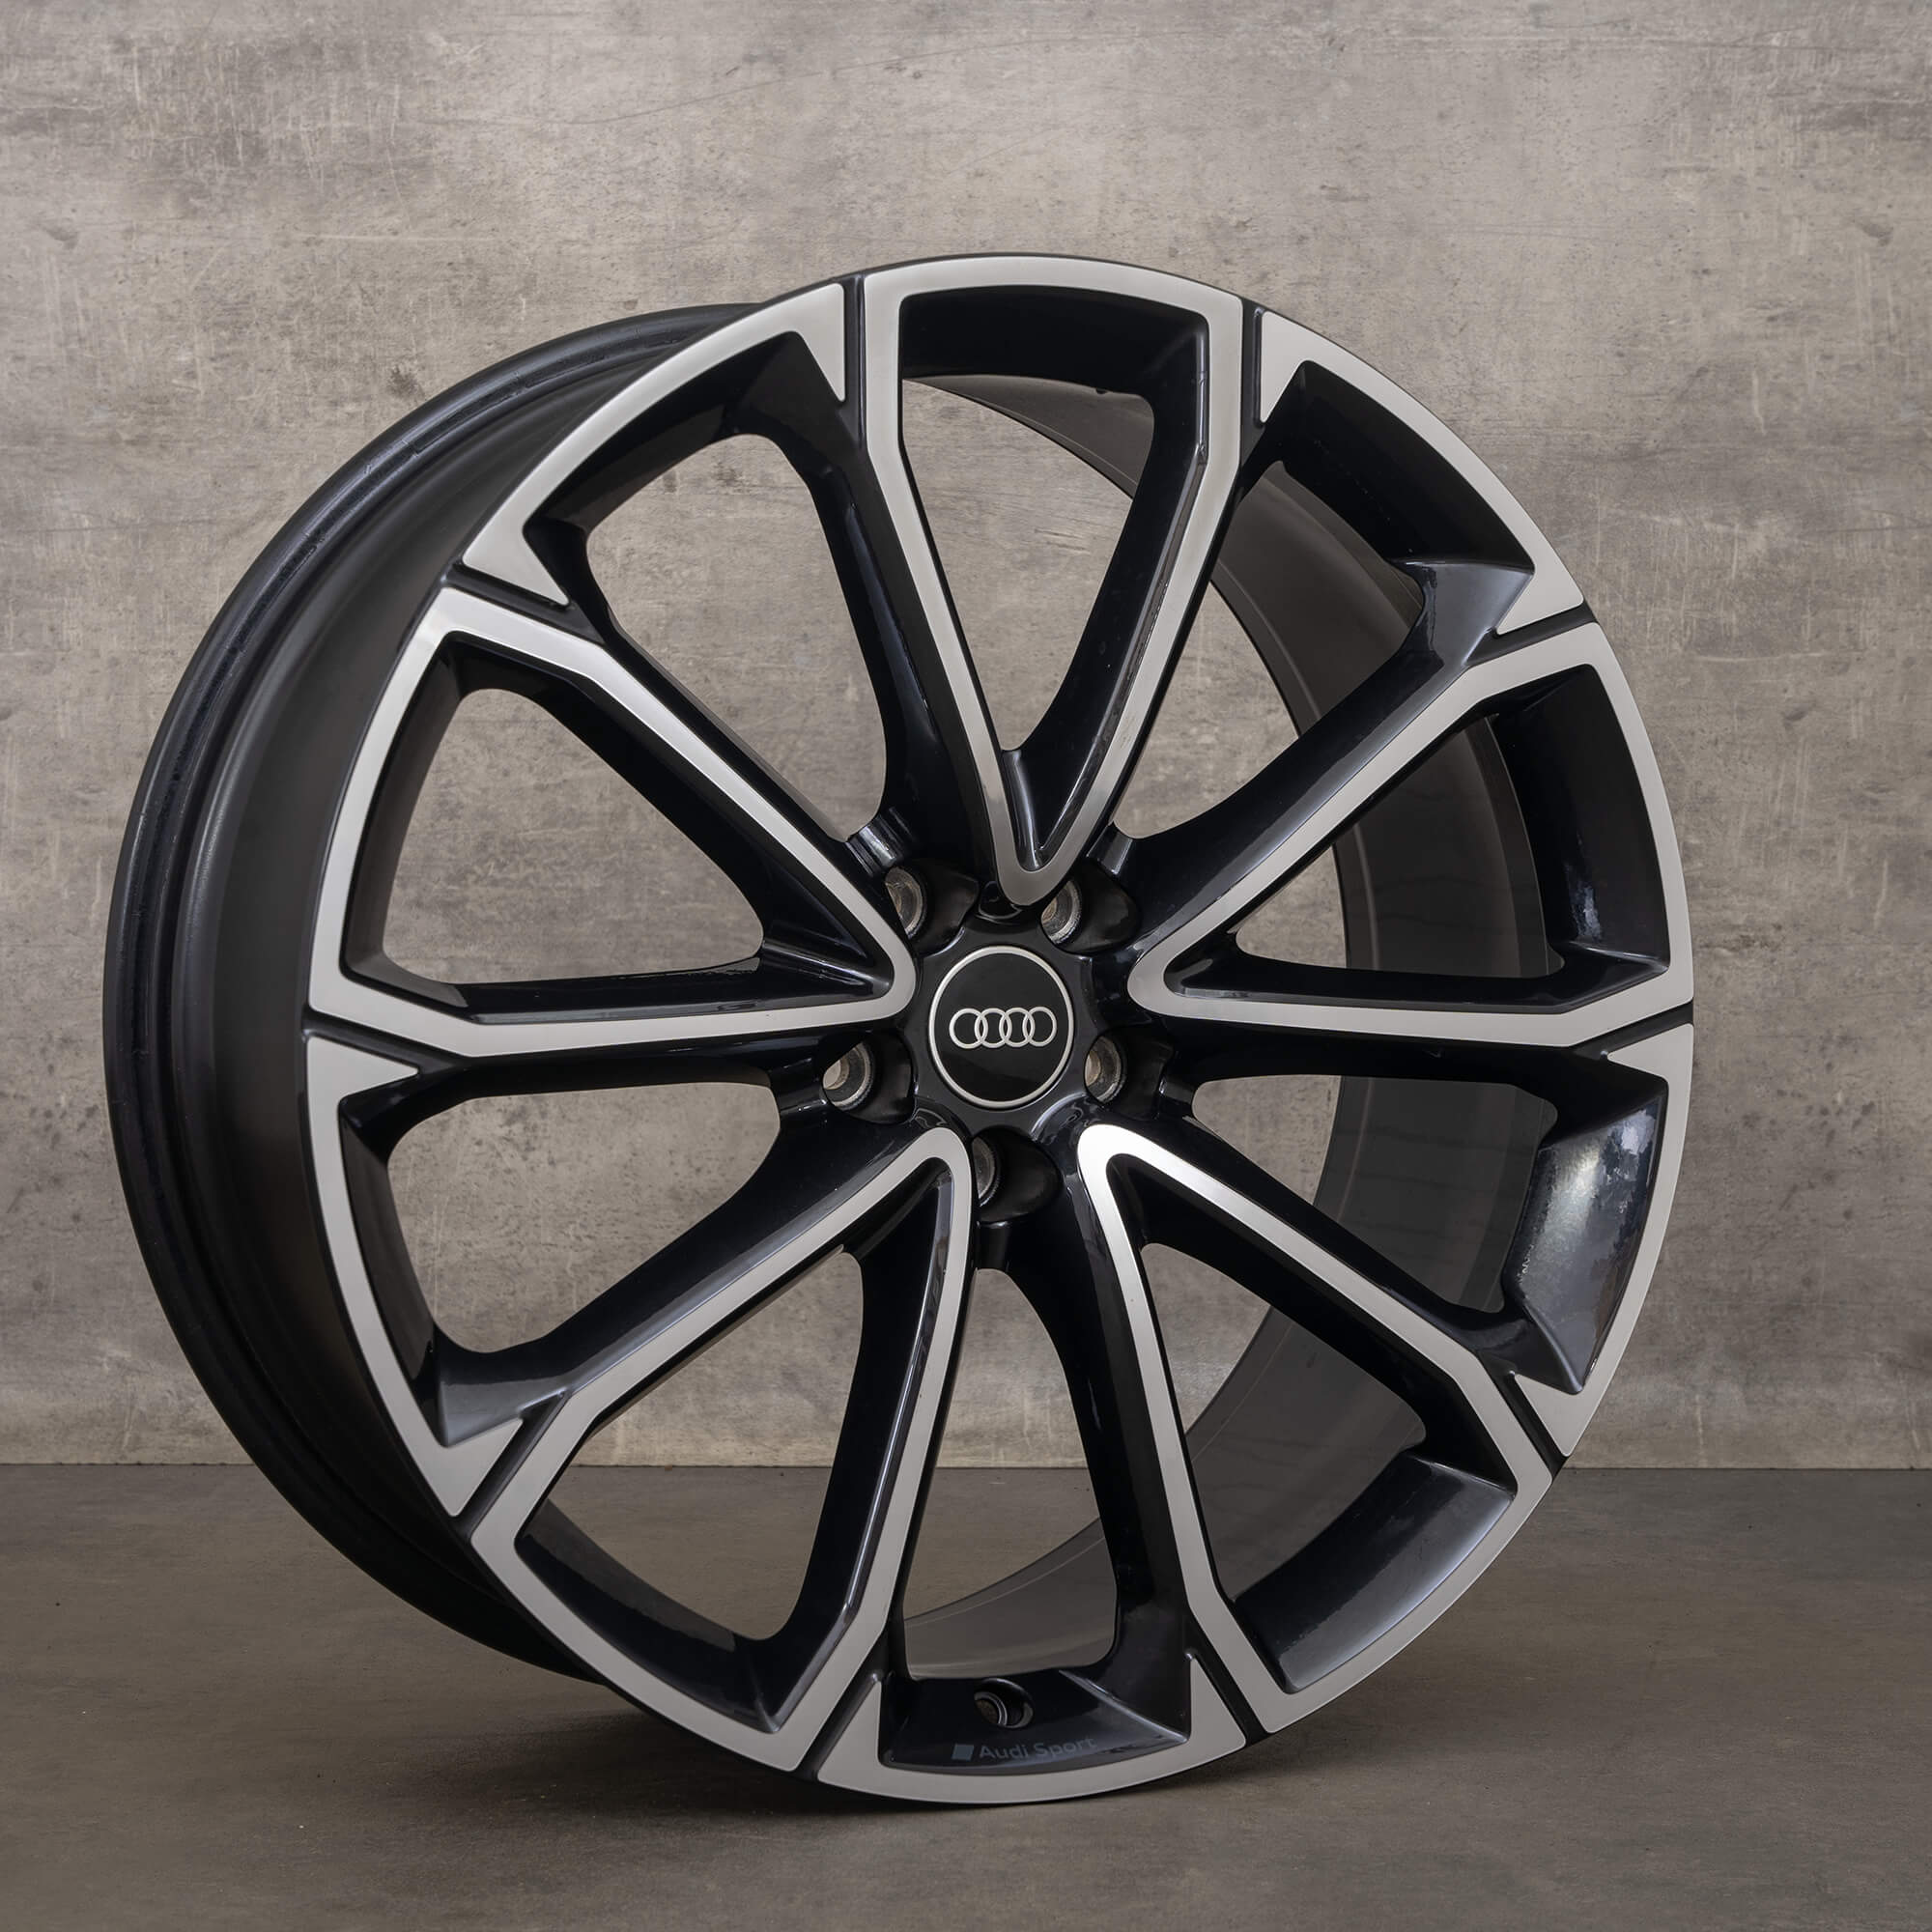 Aro original Audi Q3 RSQ3 F3 de 21 polegadas 83A601025AK aro alumínio preto alto brilho